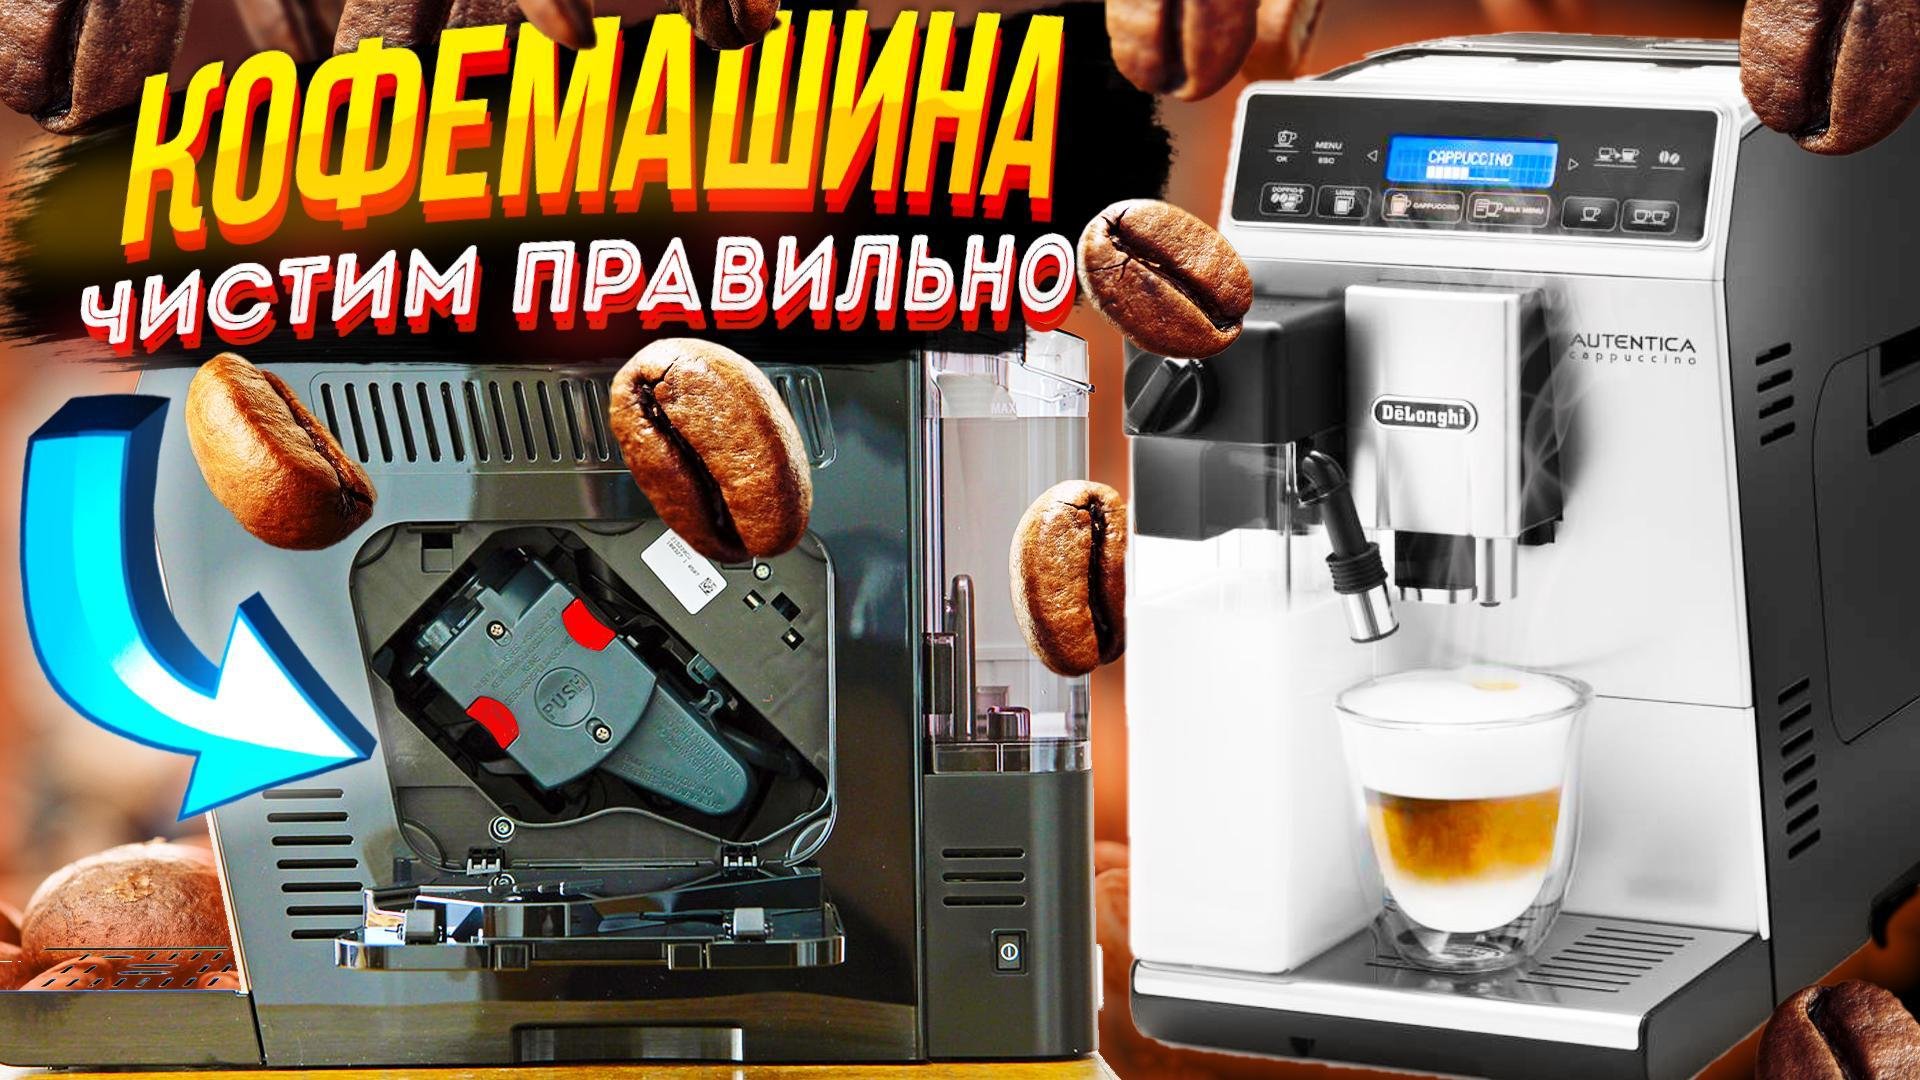 Кофемашина delonghi — удаление накипи в домашних условиях | кофе — это вдохновение и отличное настроение